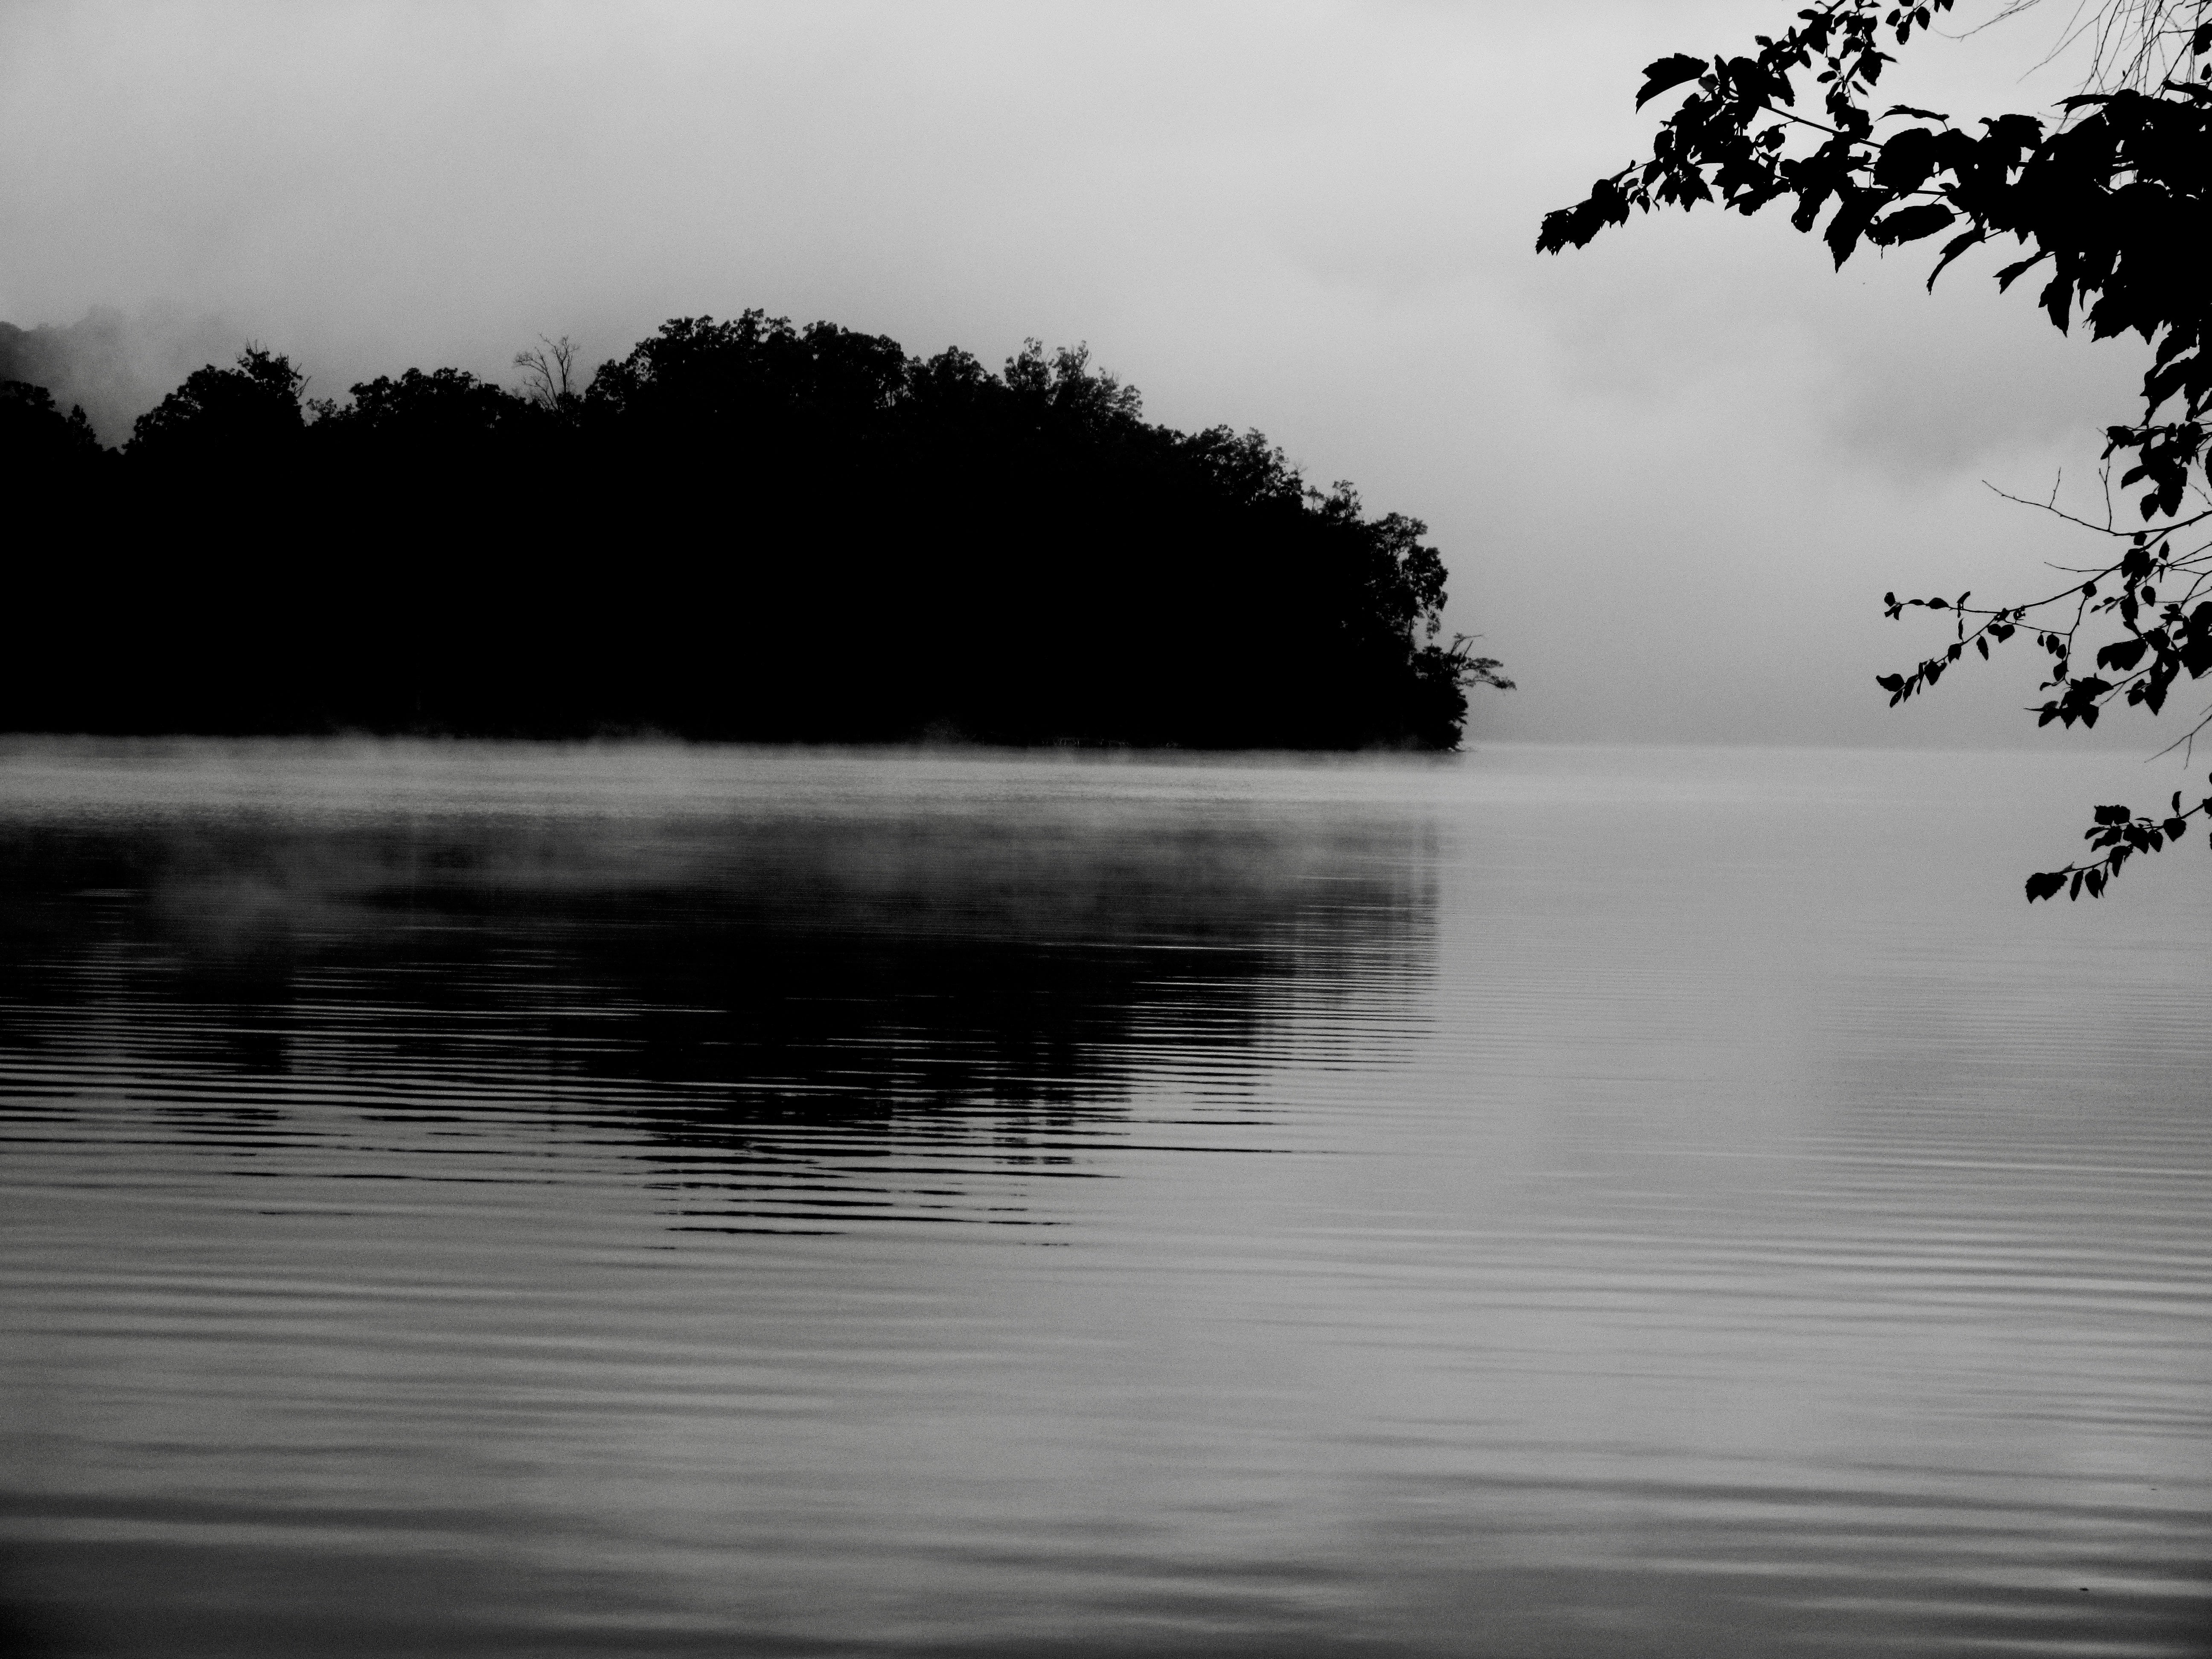 Morning fog over the lake